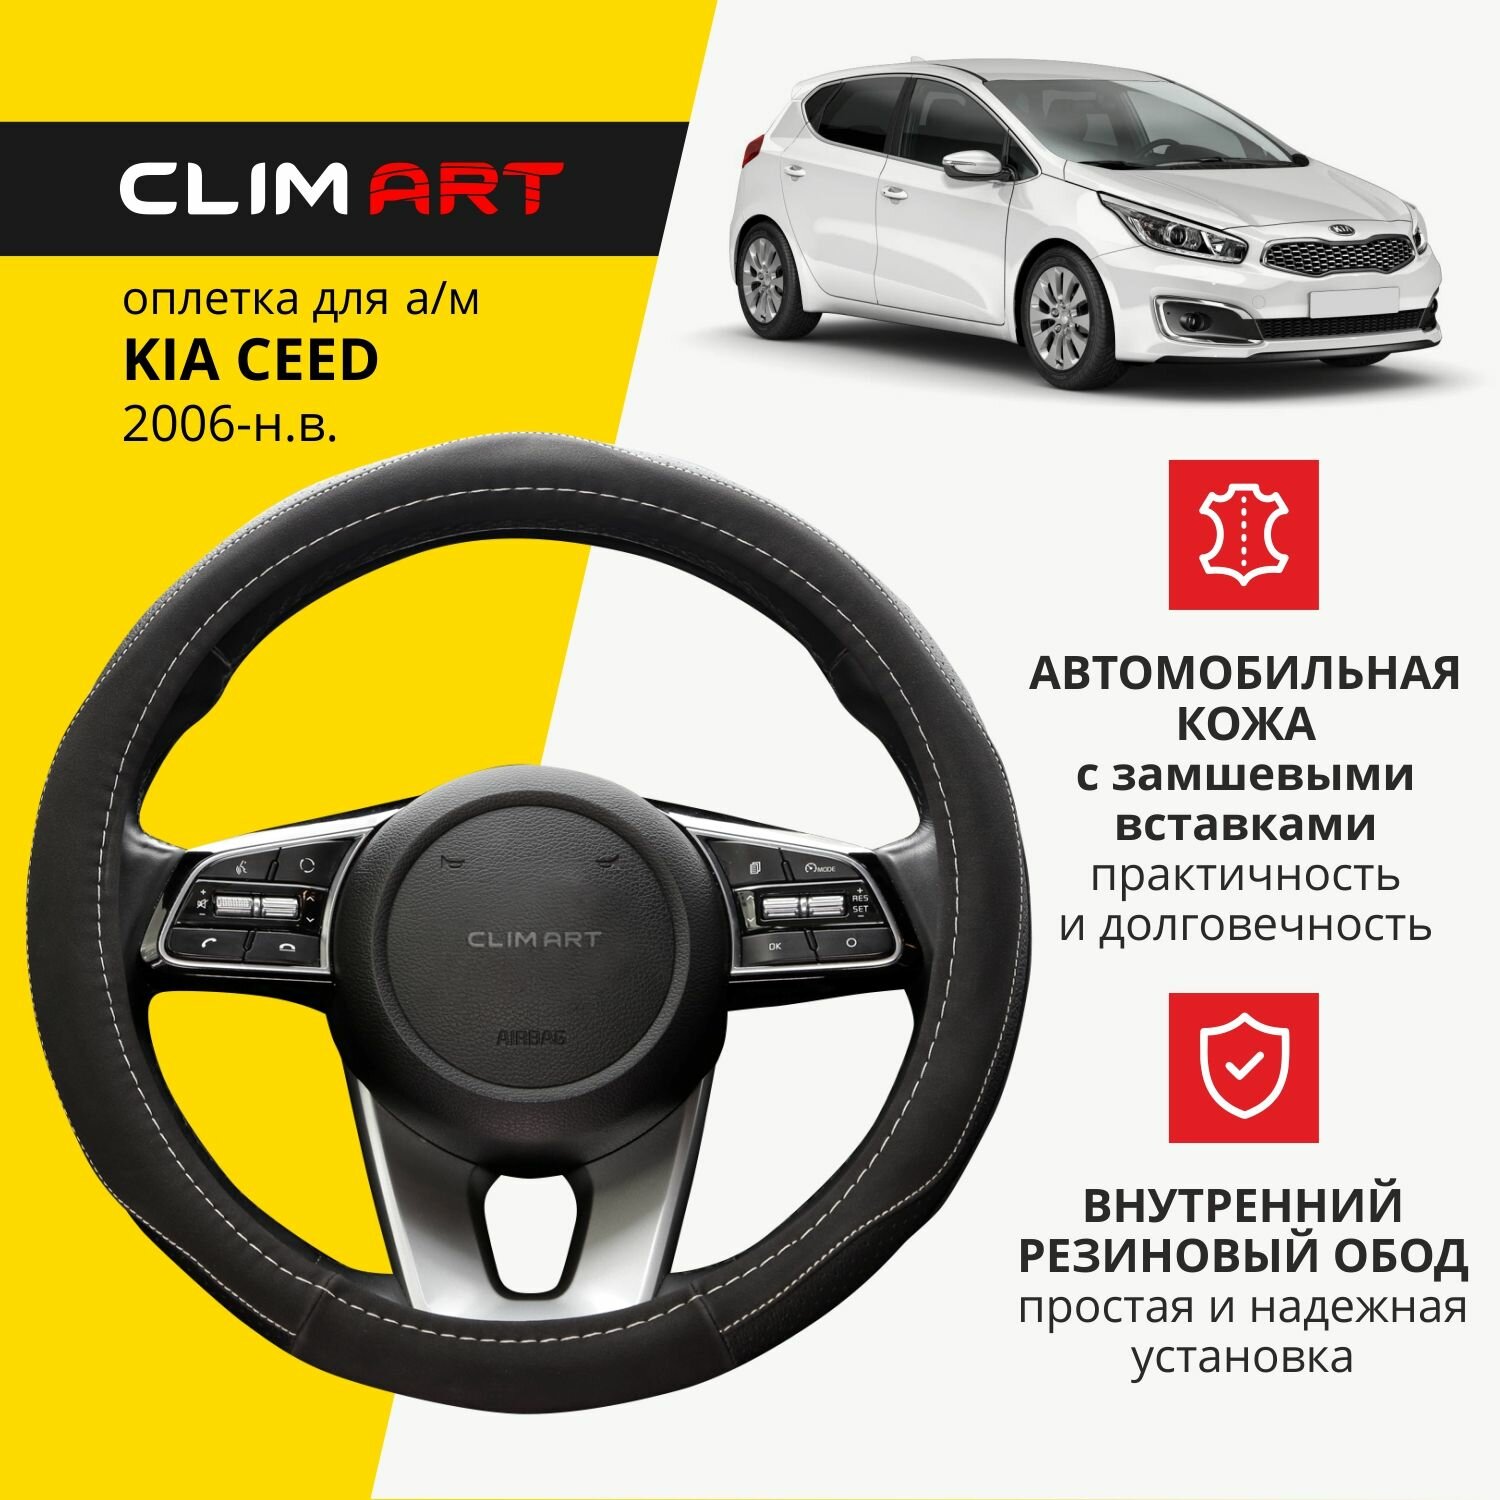 Оплетка на руль CLIM ART для Kia Ceed чехол на руль автомобиля экокожа, цвет черный, 38 см